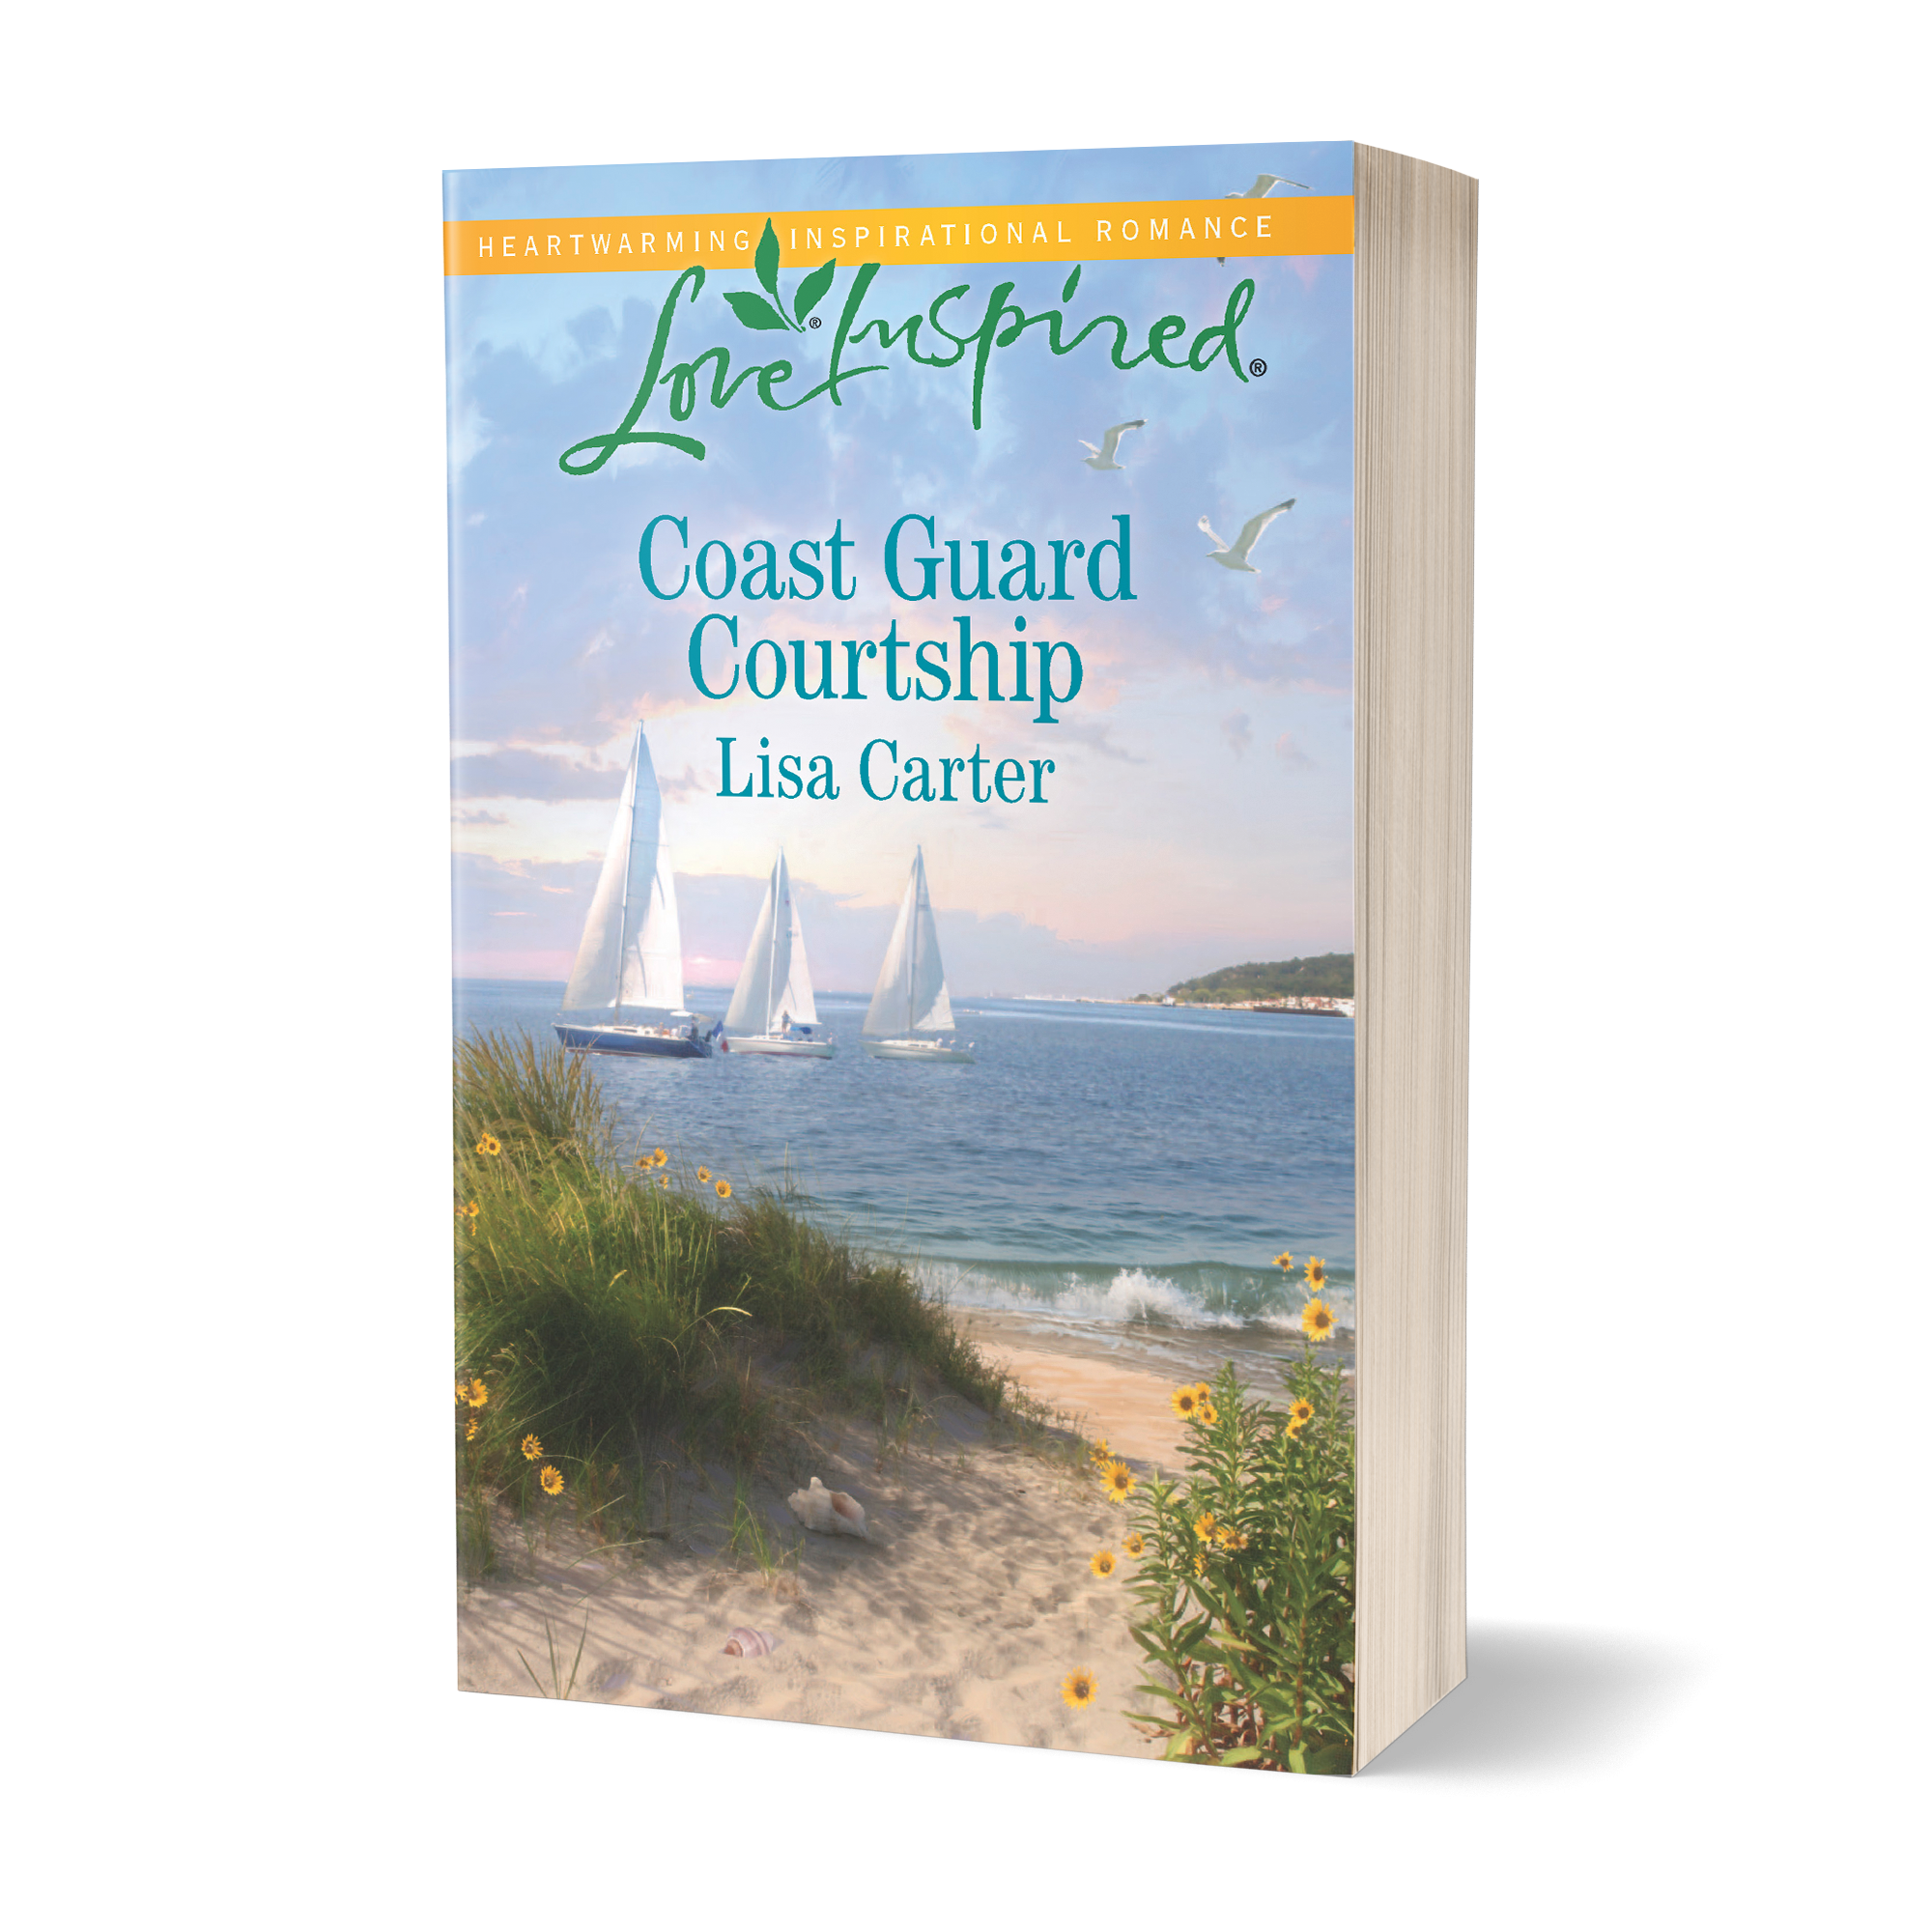  Coast Guard Courtship - Lisa Carter 